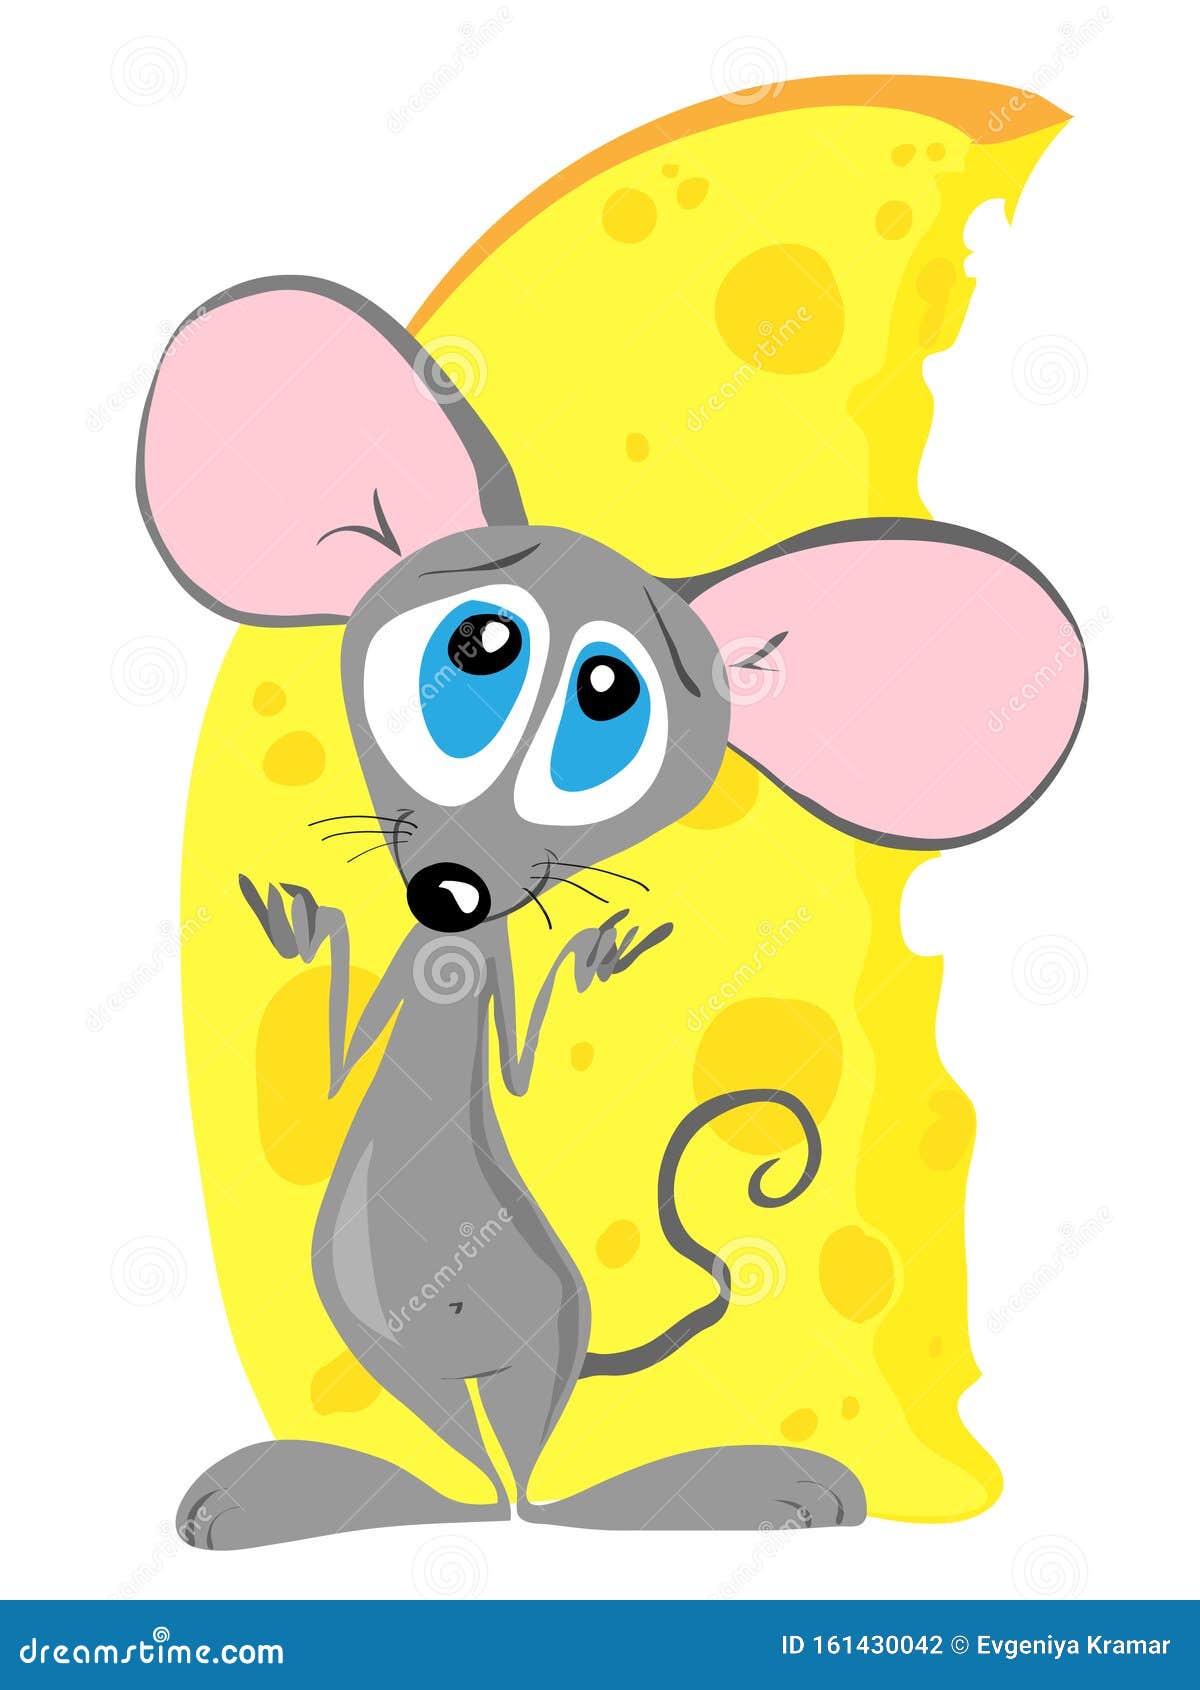 Um pequeno rato explorando um pedaço gigante de queijo suíço